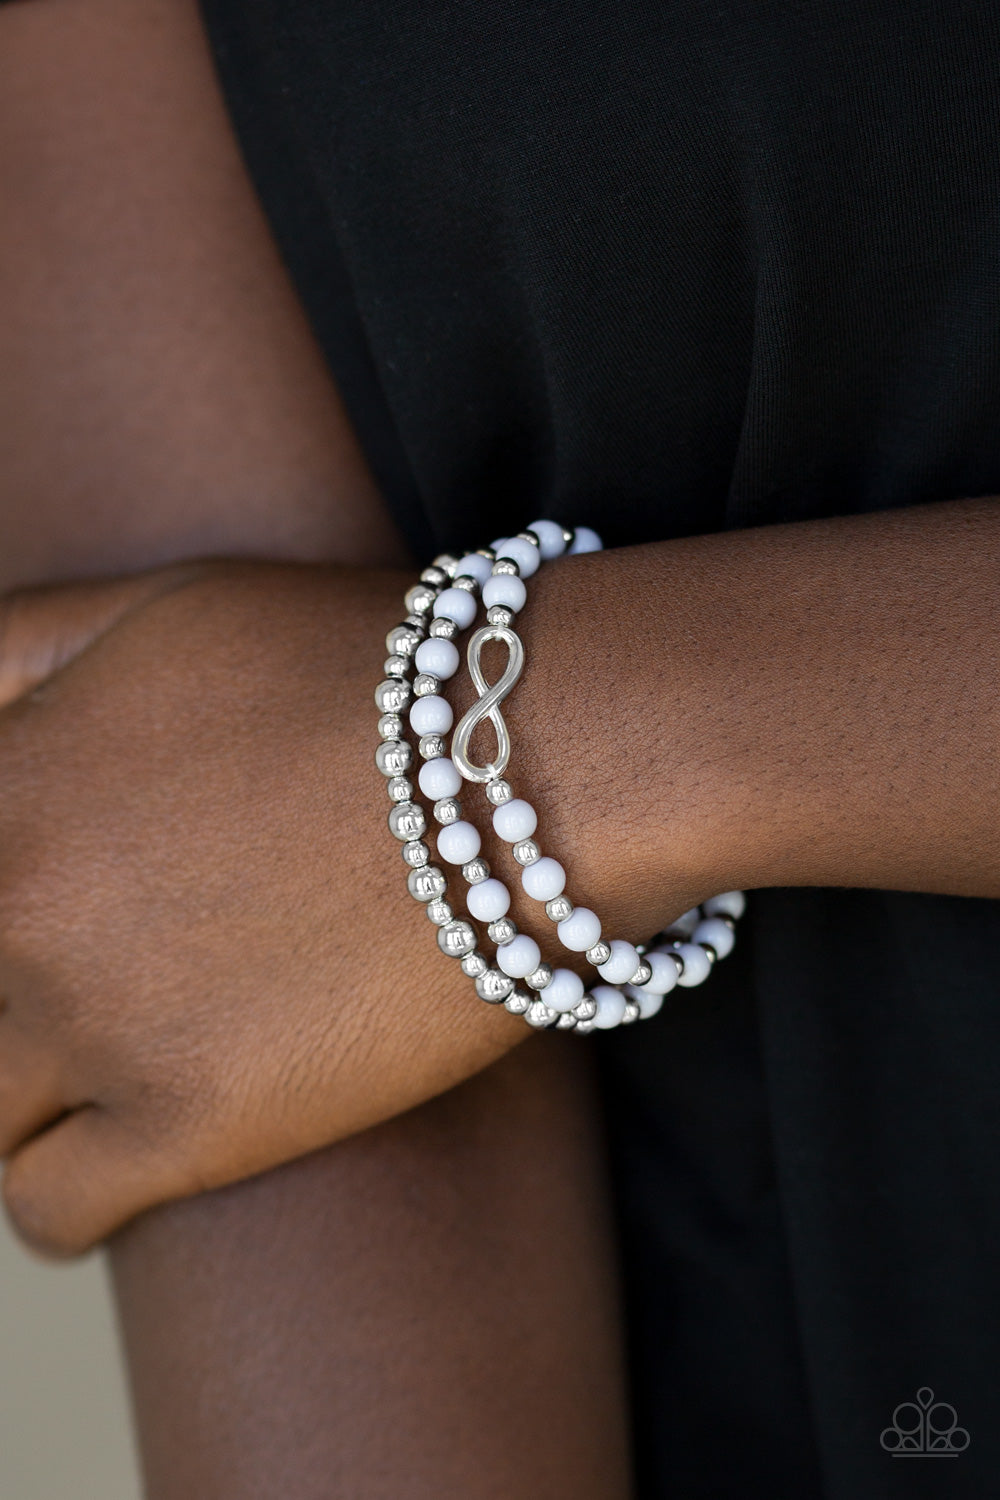 Paparazzi Immeasurably Infinite - Silver - Infinity Charm - Set of 3 Bracelets - $5 Jewelry With Ashley Swint